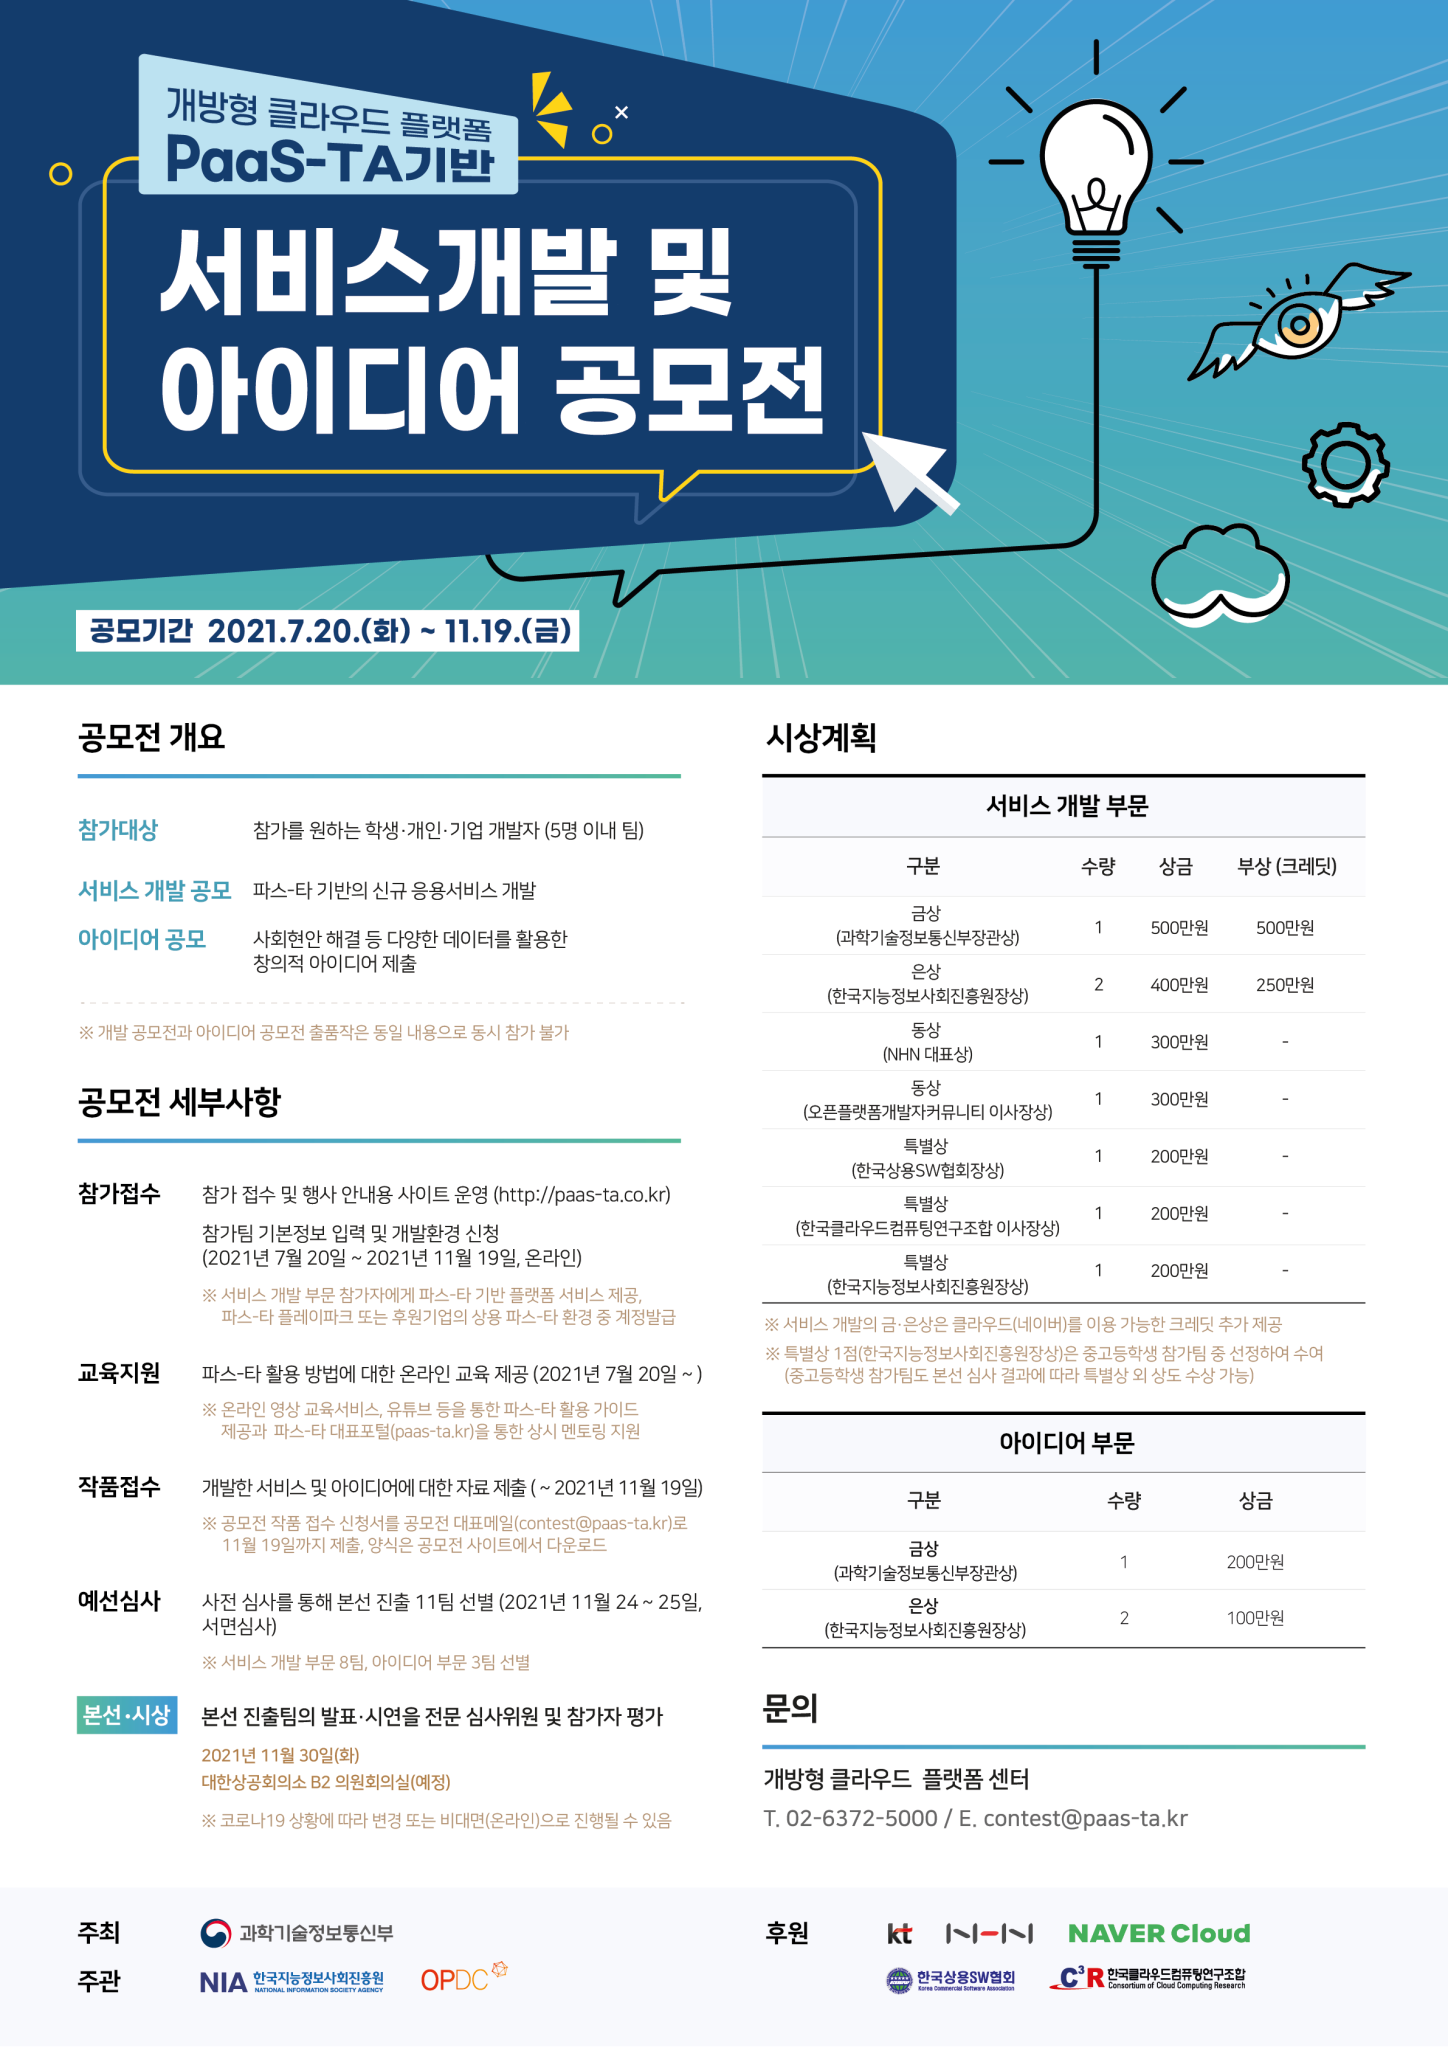 한국지능정보사회진흥원 디지털플랫폼팀_공모전 포스터